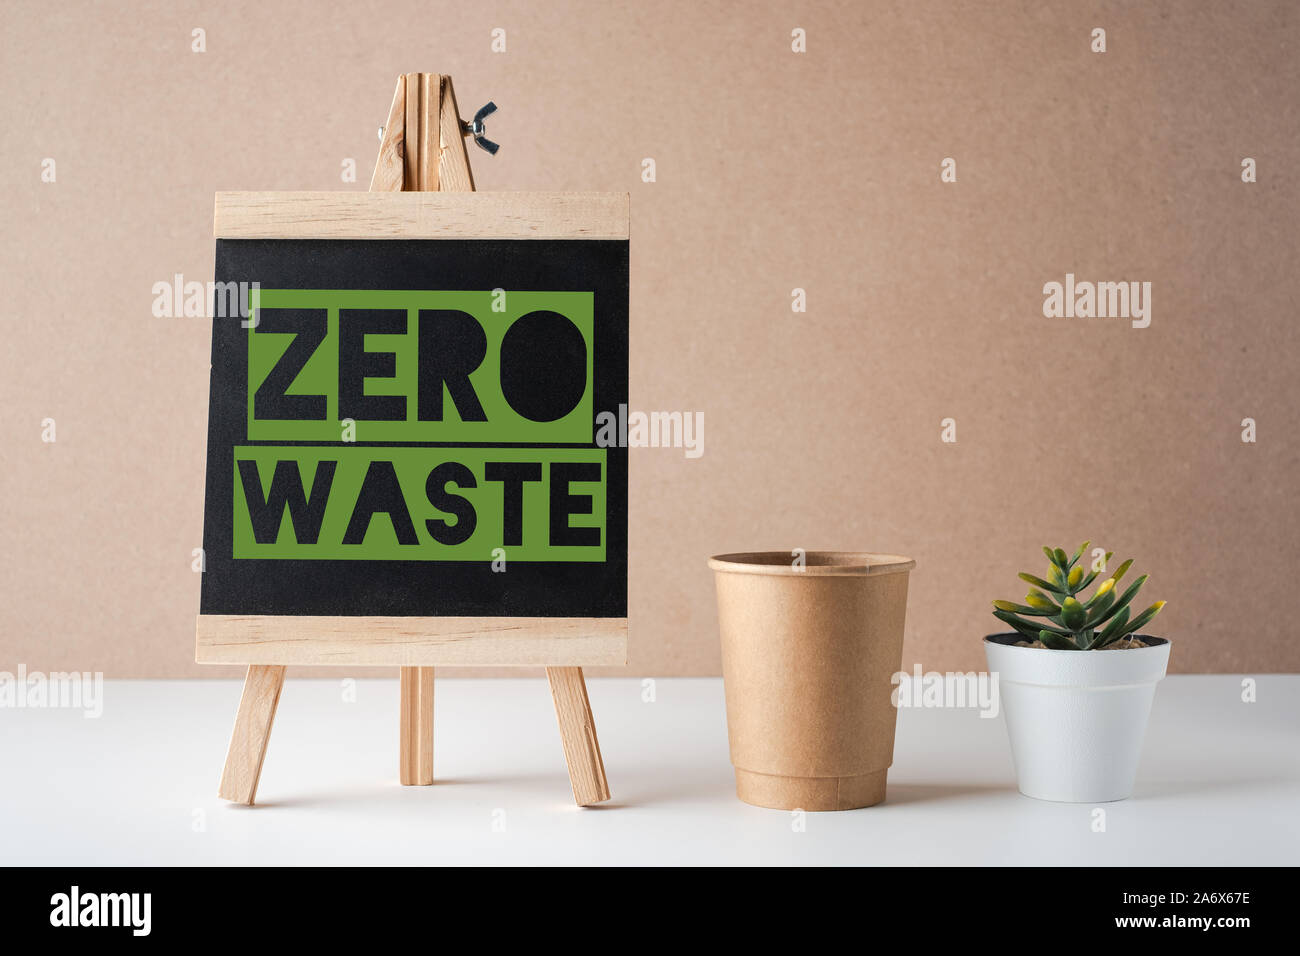 Zéro déchets mot sur tableau noir avec peper cup et plante verte sur le tableau blanc et fond brun.eco friendly concept Banque D'Images